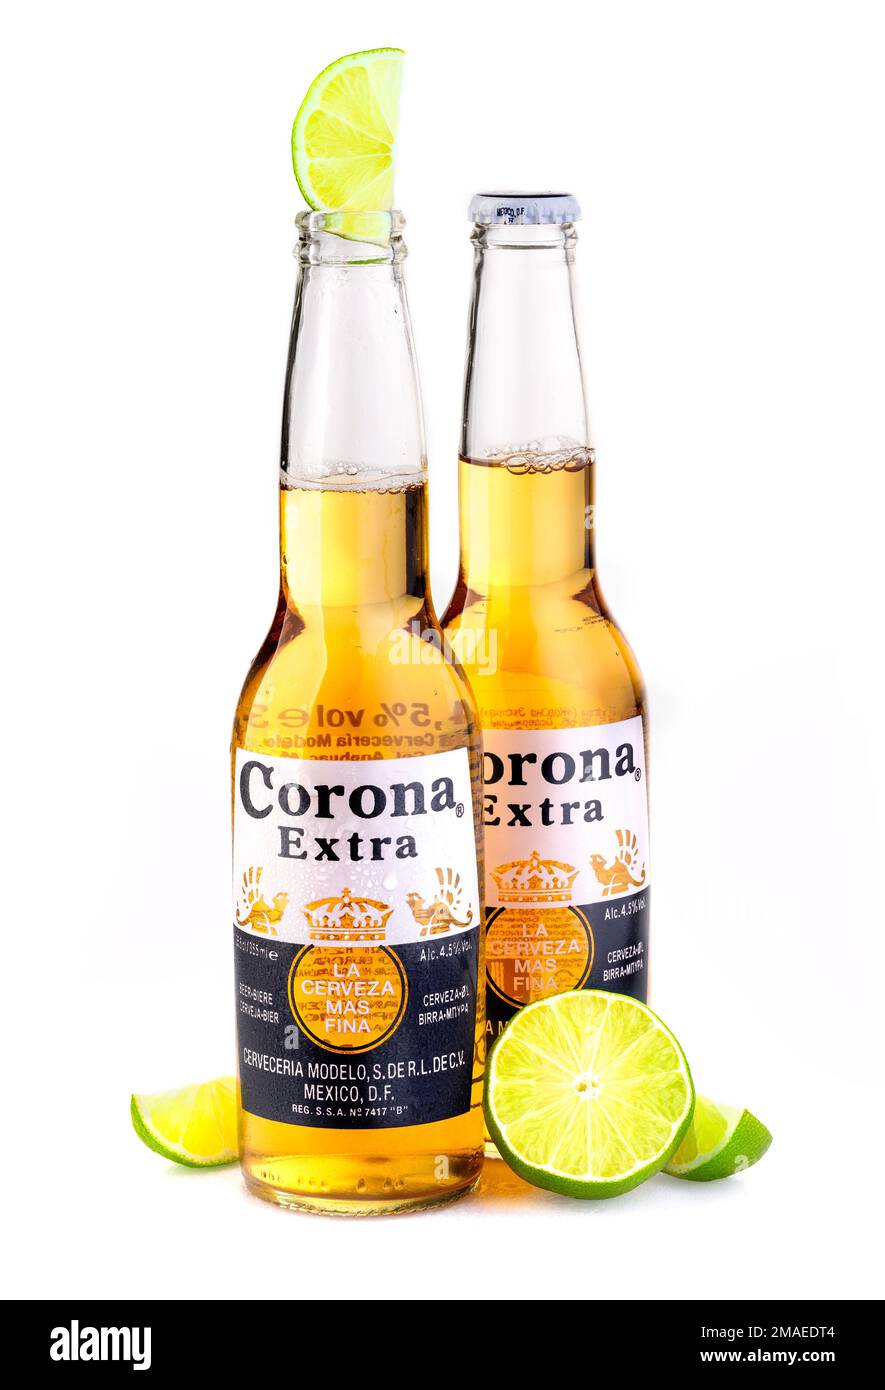 CHISINAU, MOLDAVIE - 19 janvier 2018: Photo d'une bouteille de Corona Extra Beer. Corona, produit par Grupo Modelo avec Anheuser Busch InBev, est le plus important Banque D'Images